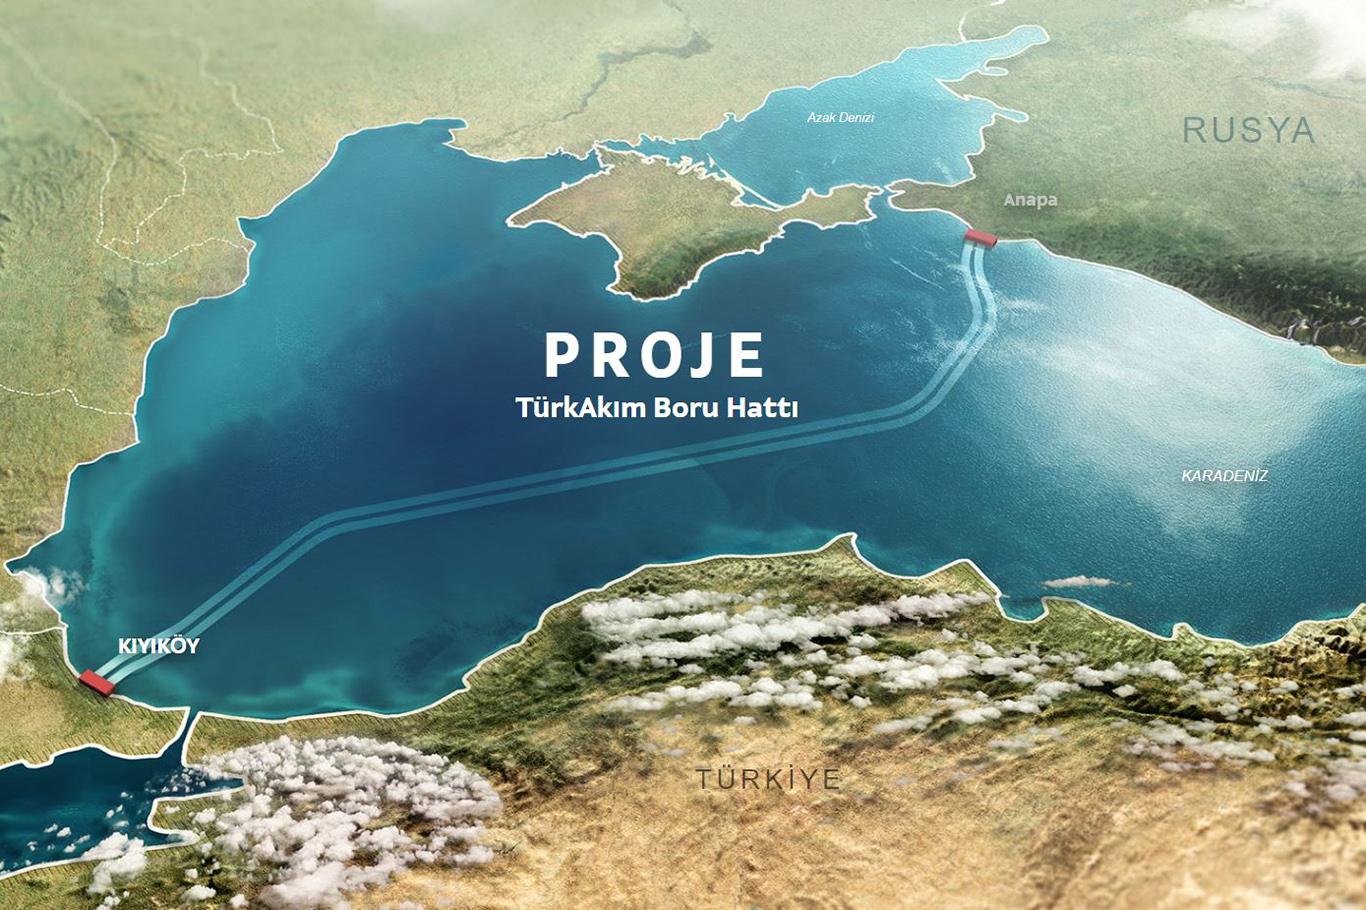 Rusya'dan ilk gazın yıl sonunda Türkiye'ye gönderilmesi hedefleniyor